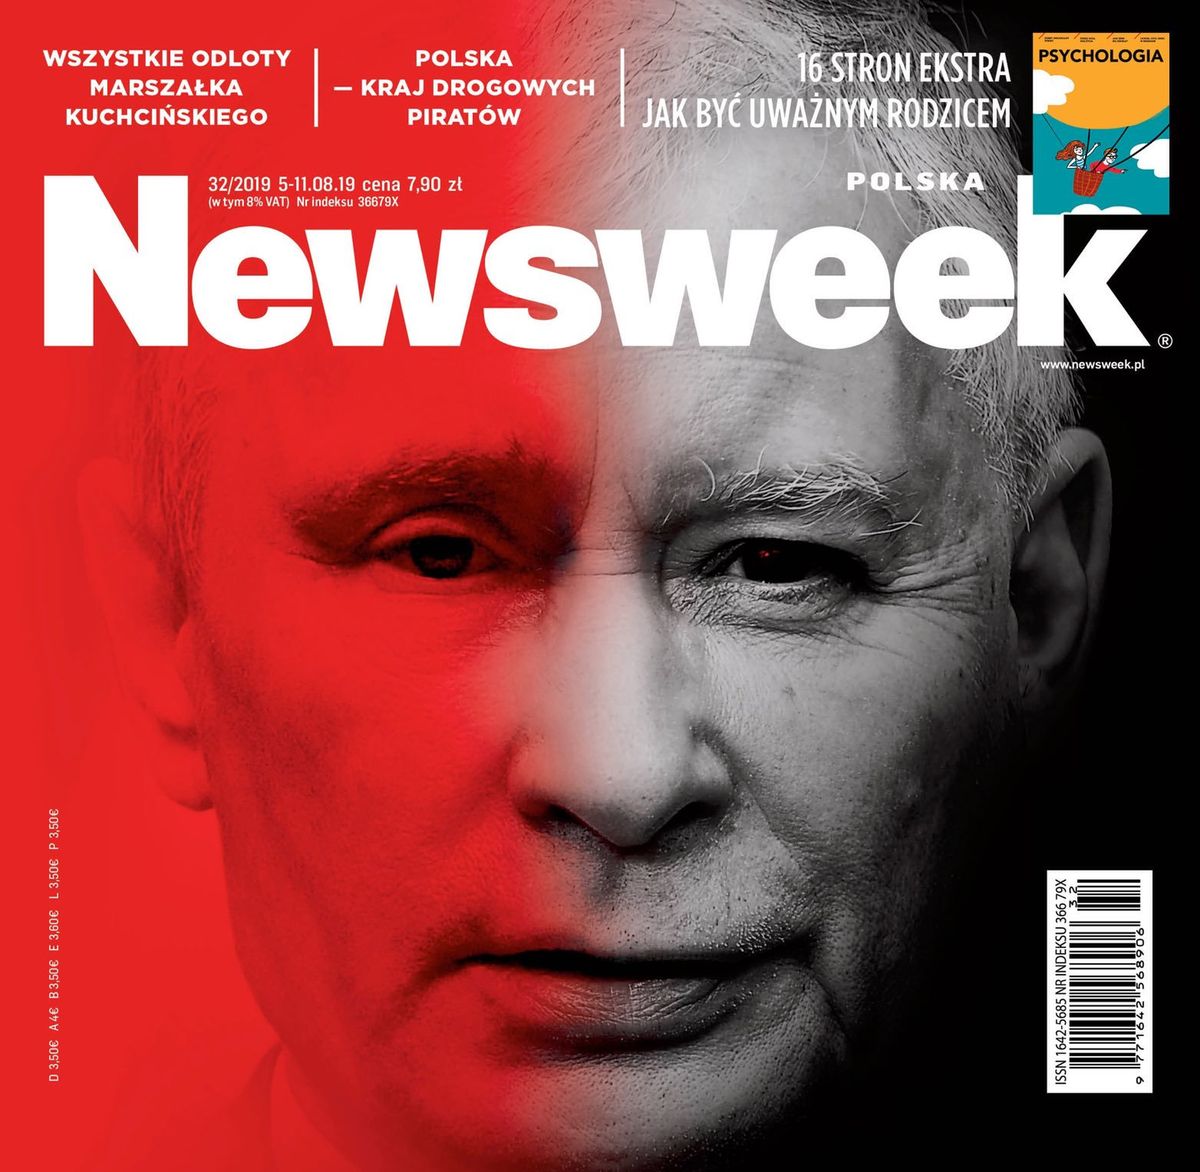 Okładki tygodników. "Do Rzeczy" o atakach na Kościół, "Newsweek" o Kaczyńskim